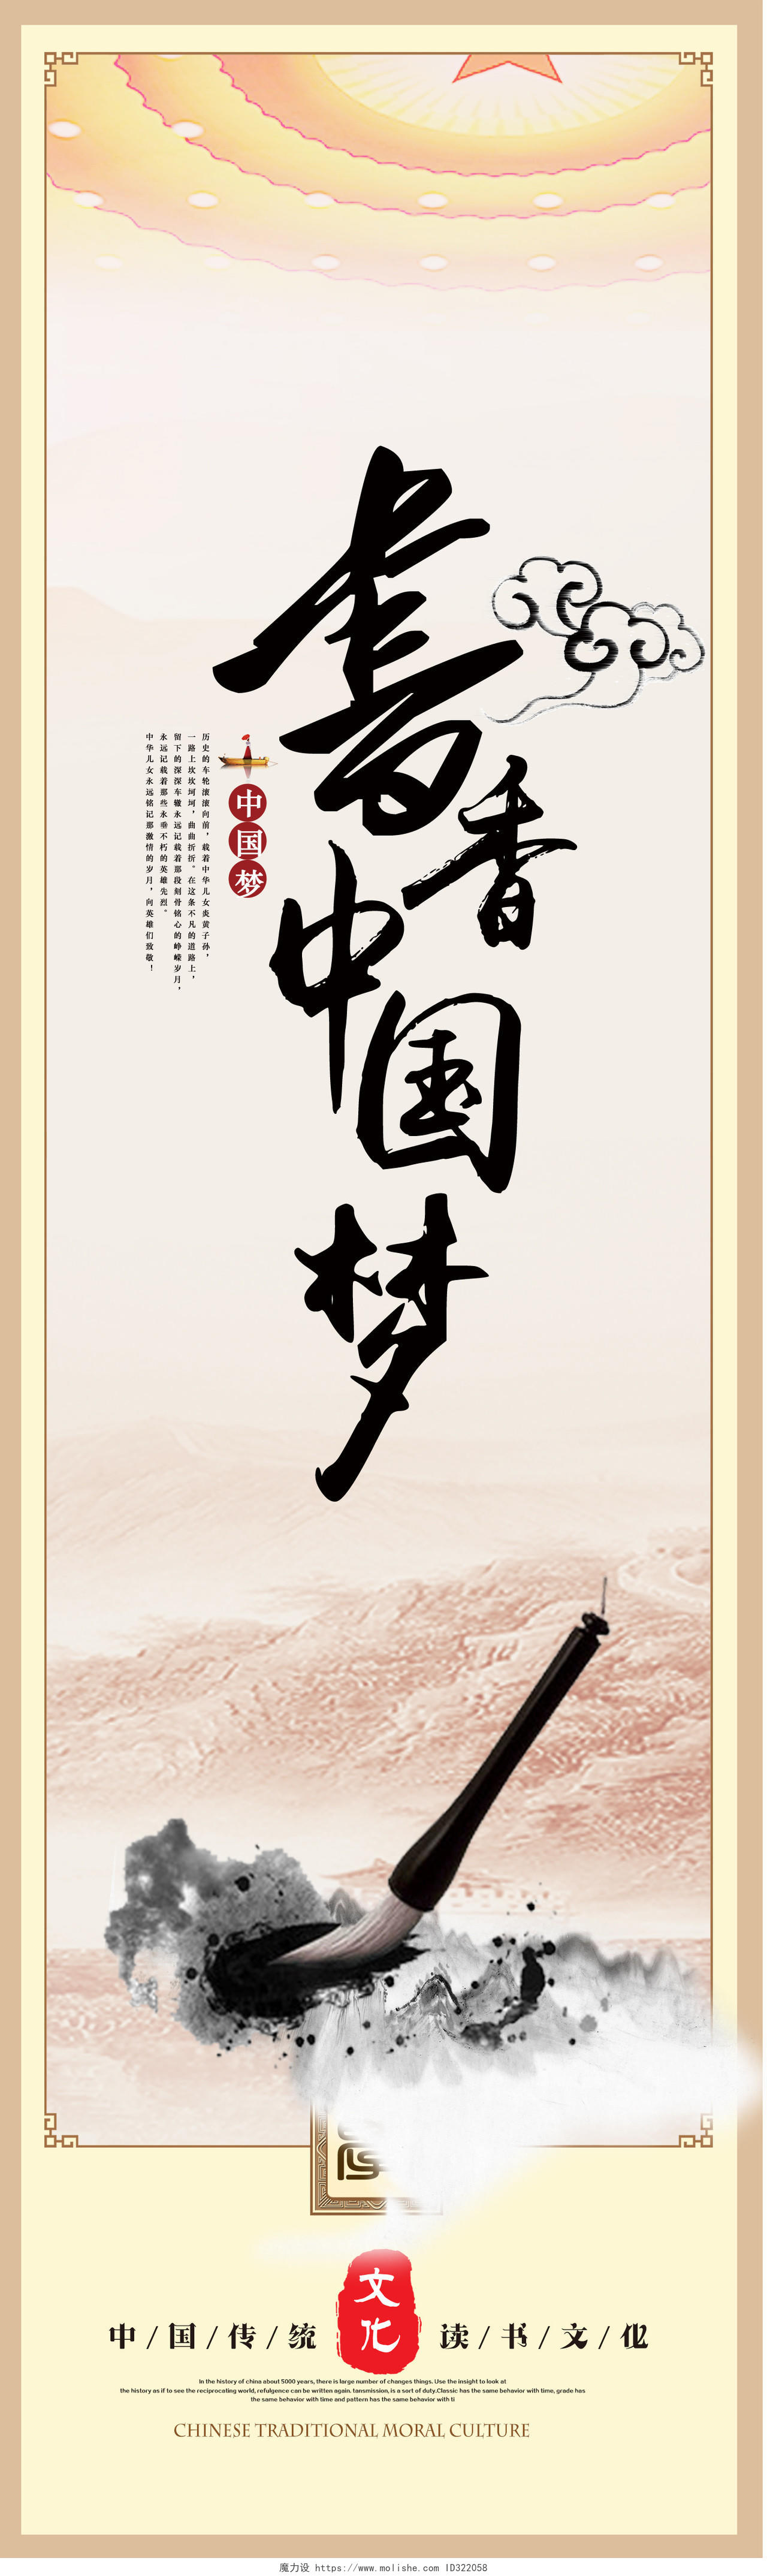 读书分享中国风书香中国梦读书阅读文化5联画挂画海报展板